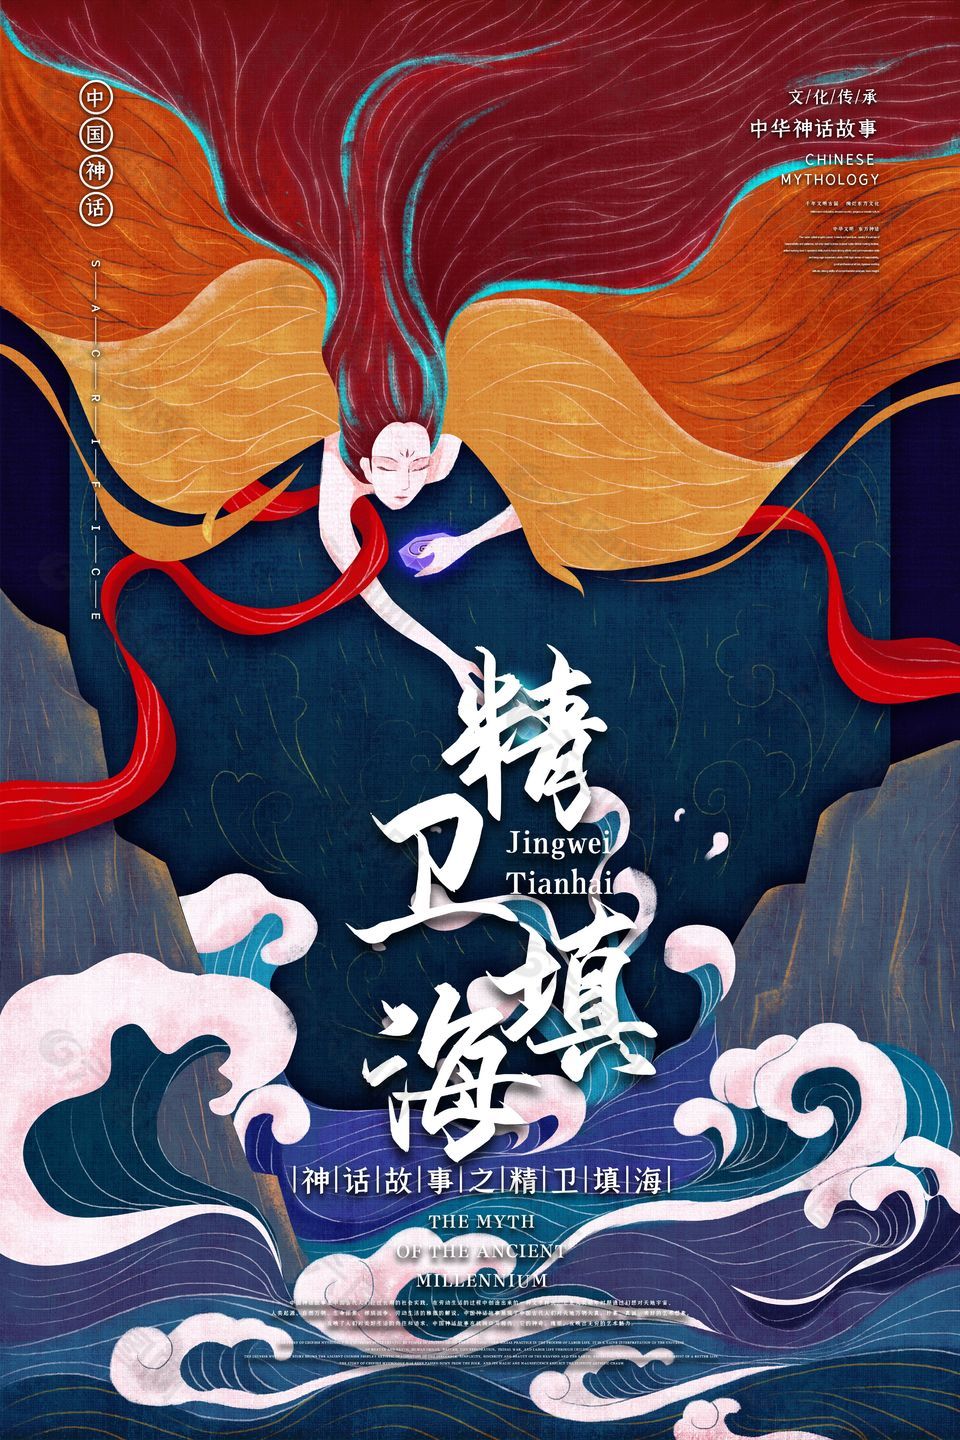 中国神话故事精卫填海海报